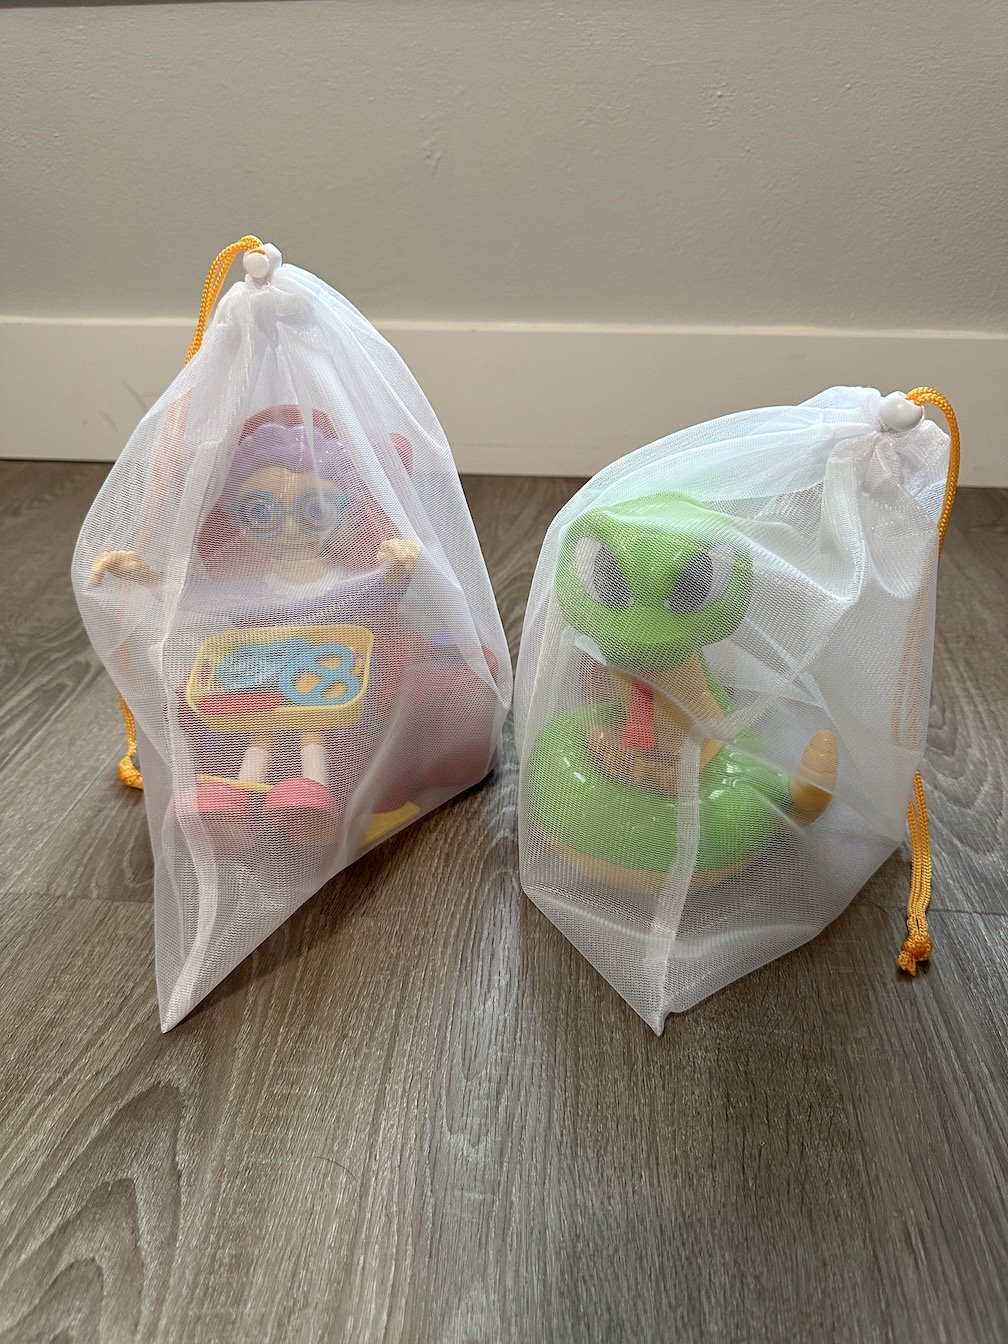 toy storage bags.JPG